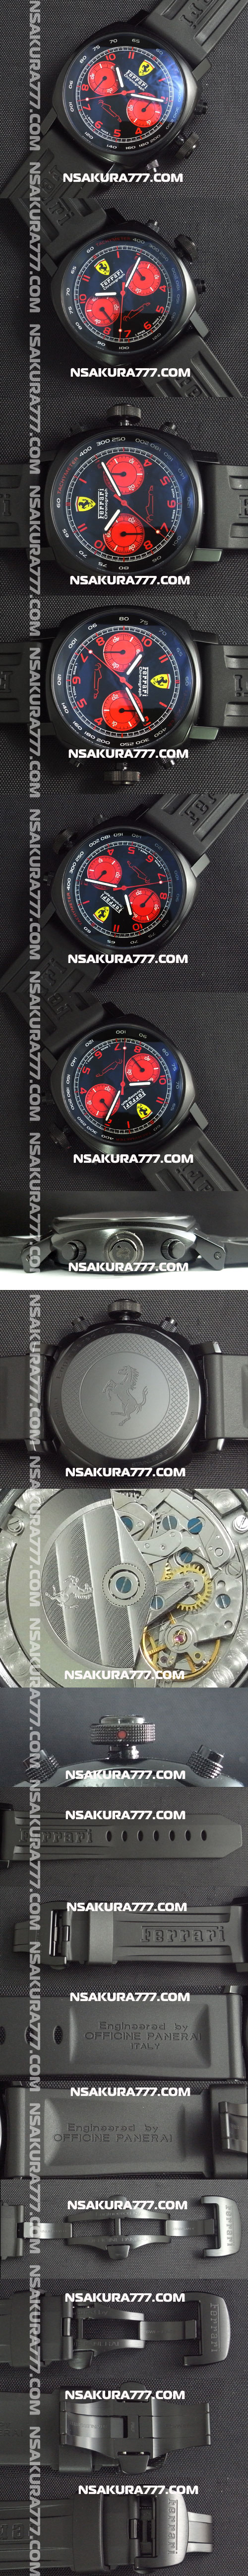 レプリカ時計フェラーリ DLC クロノグラフ Asian 7750搭載 28800振動 - ウインドウを閉じる